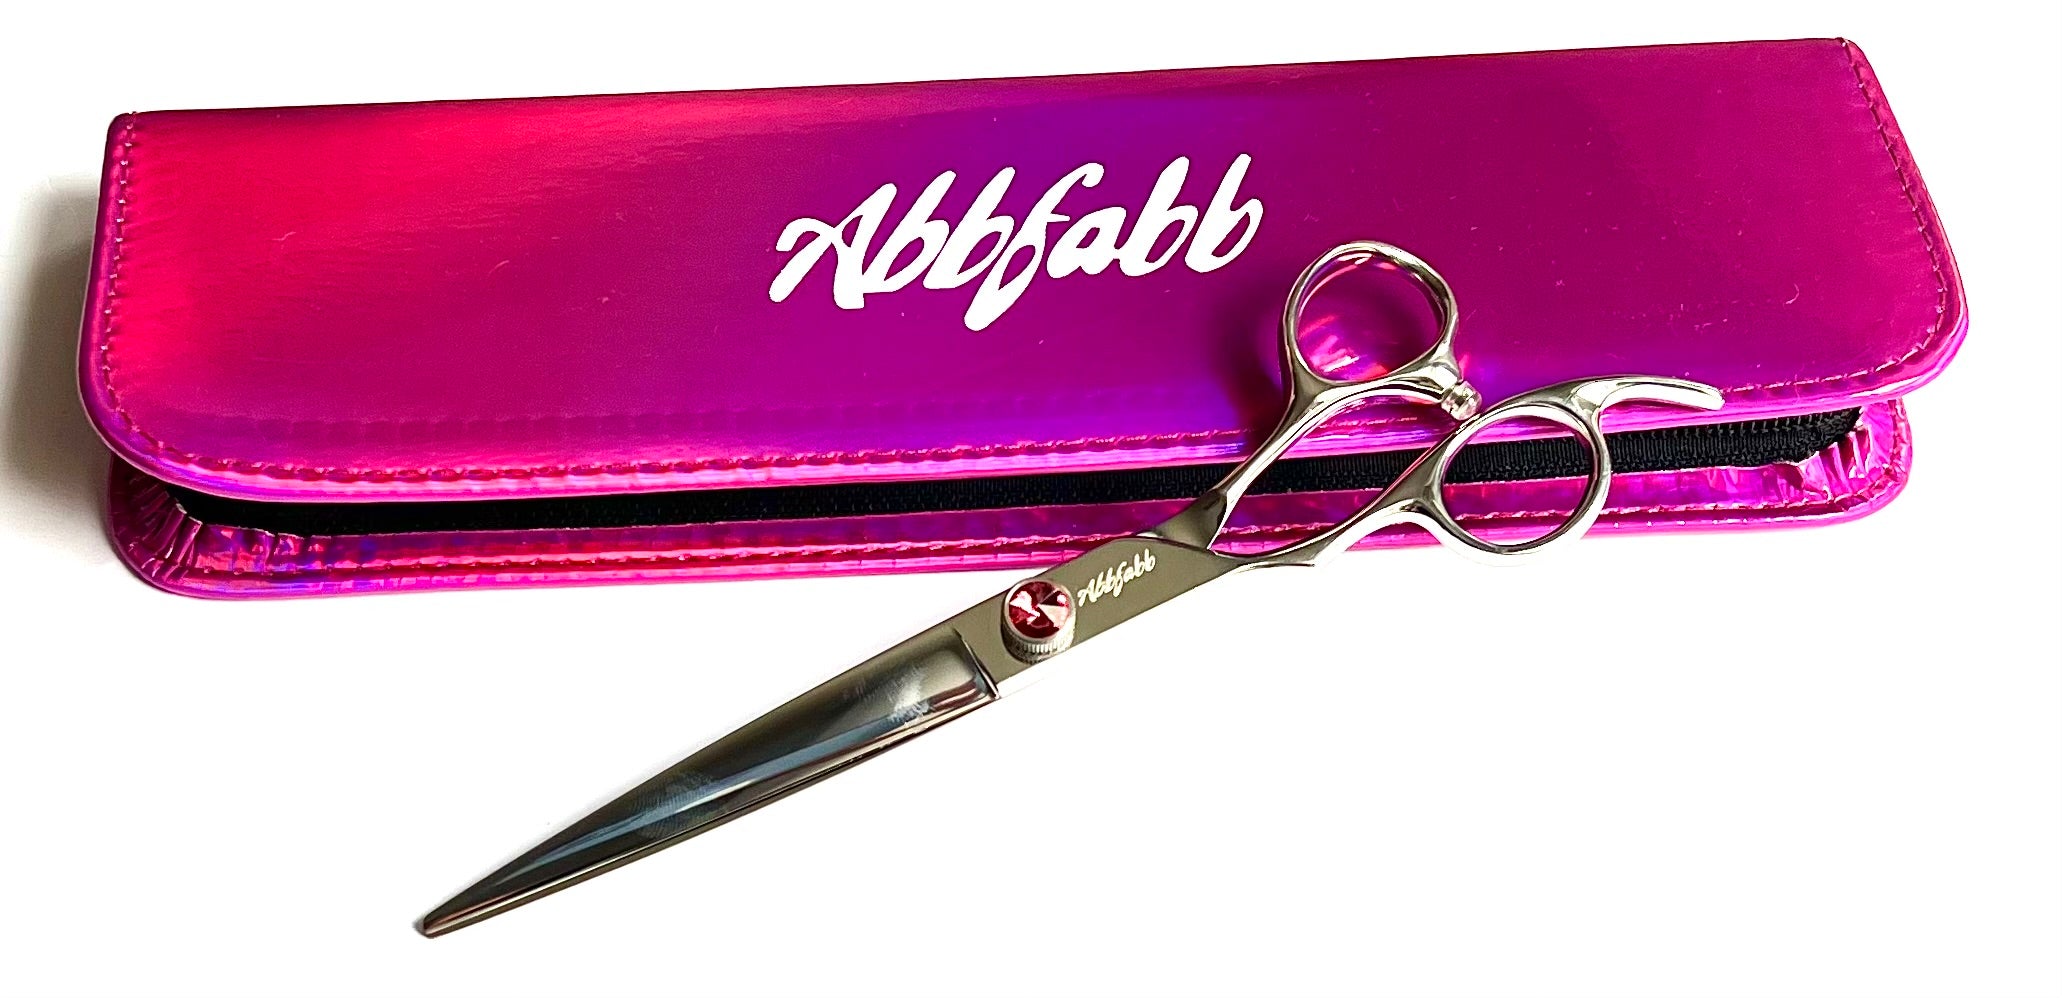 left handed straight dog grooming scissor-VG10 steel-Abbfabb